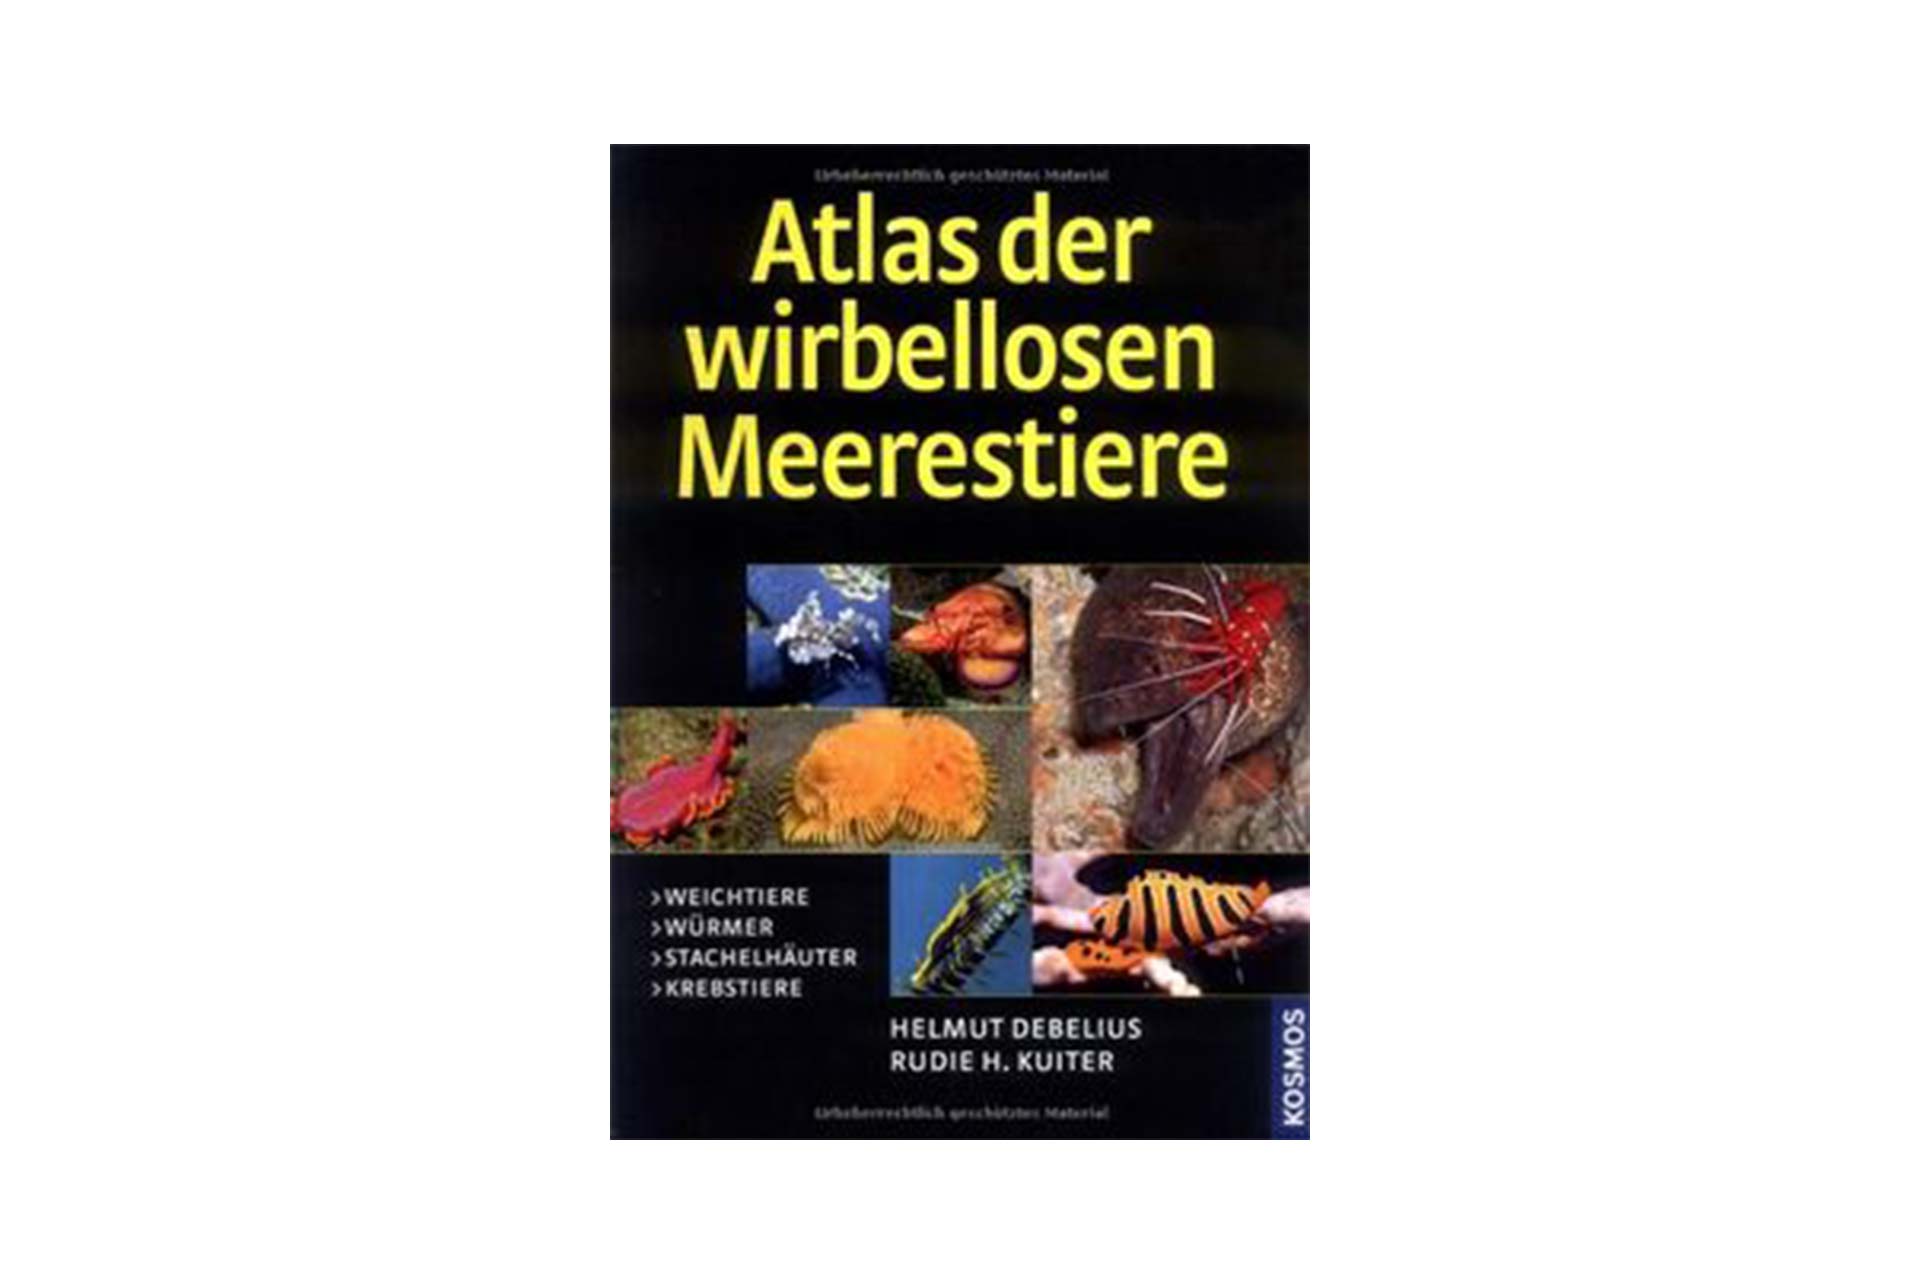 Atlas der wirbellosen Meerestiere - Kuiter & Debelius